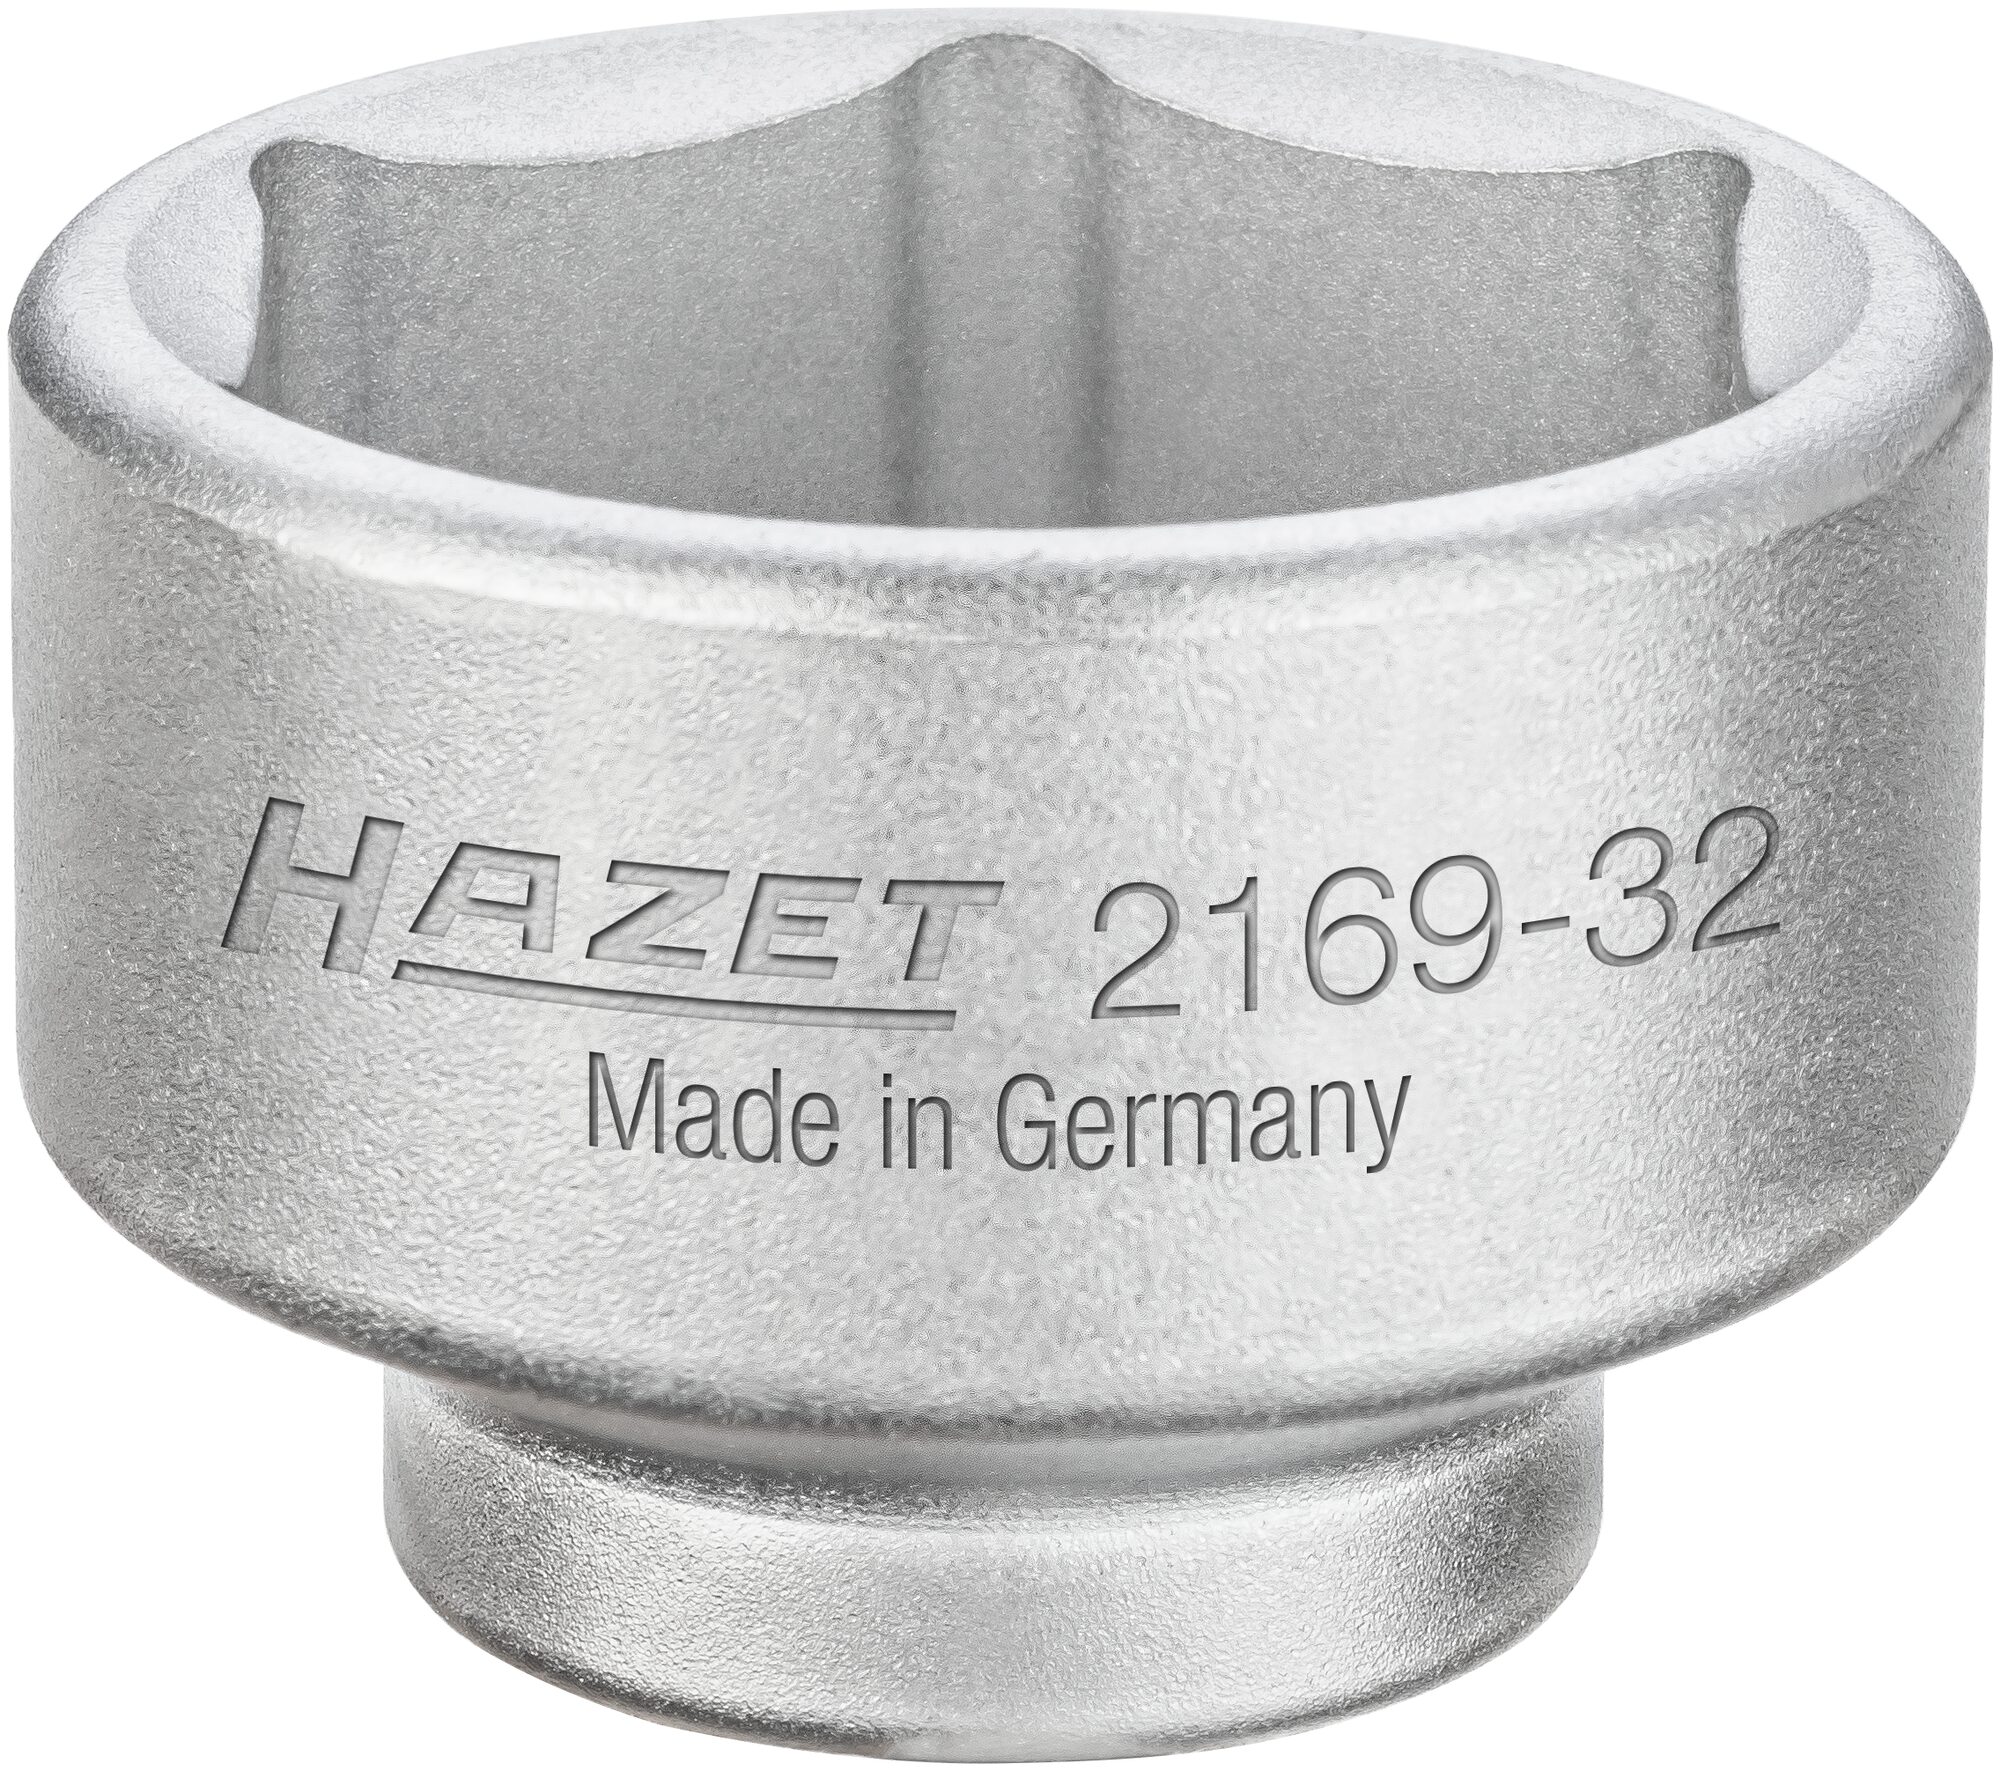 HAZET Ölfilter-Schlüssel 2169-32 · Vierkant hohl 10 mm (3/8 Zoll) · Außen Sechskant Profil · 43 mm